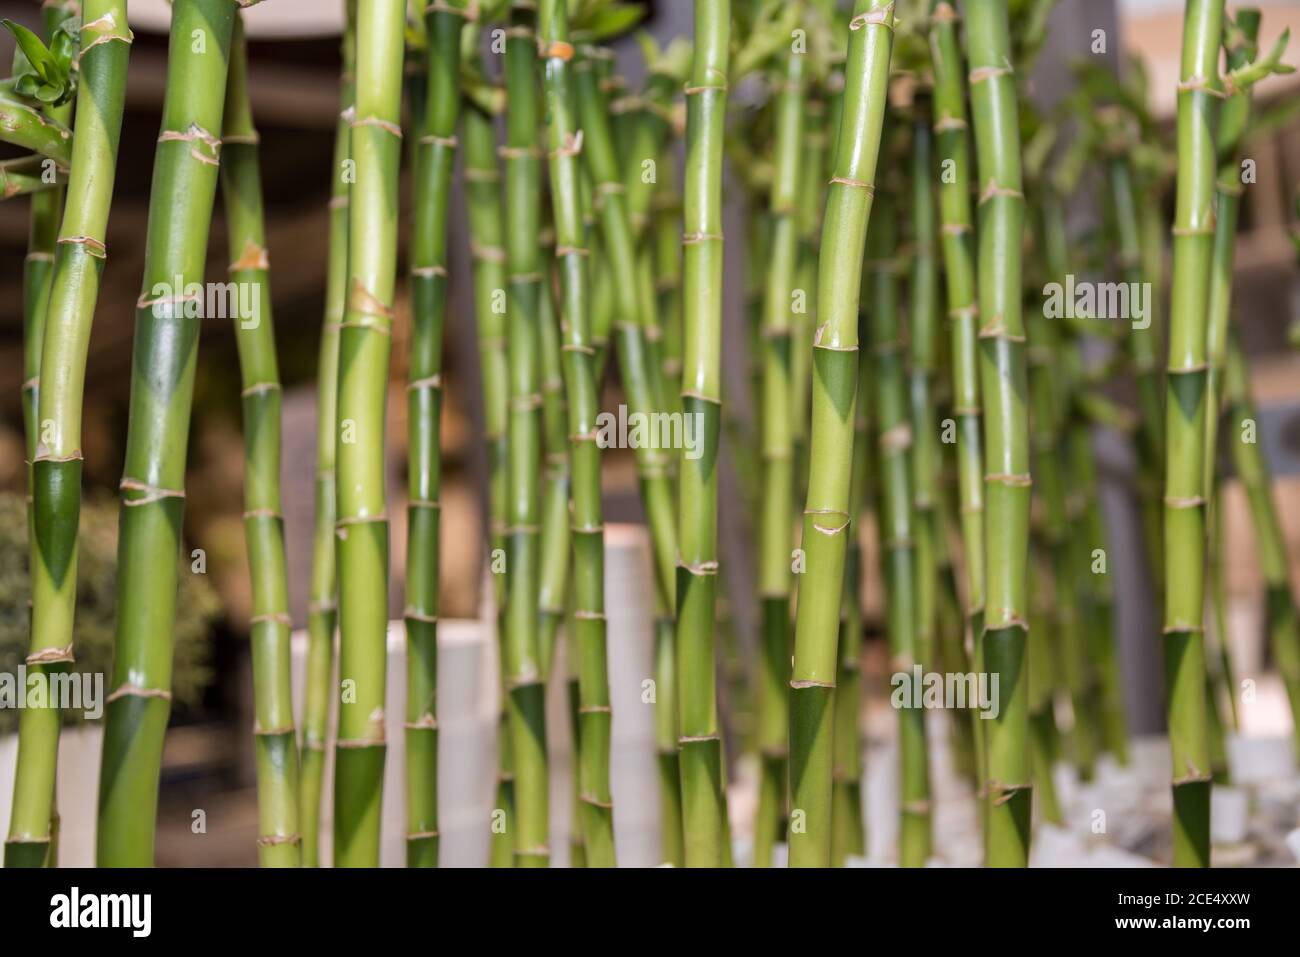 Bambou - matériau de construction et matière première bambou canne Banque D'Images